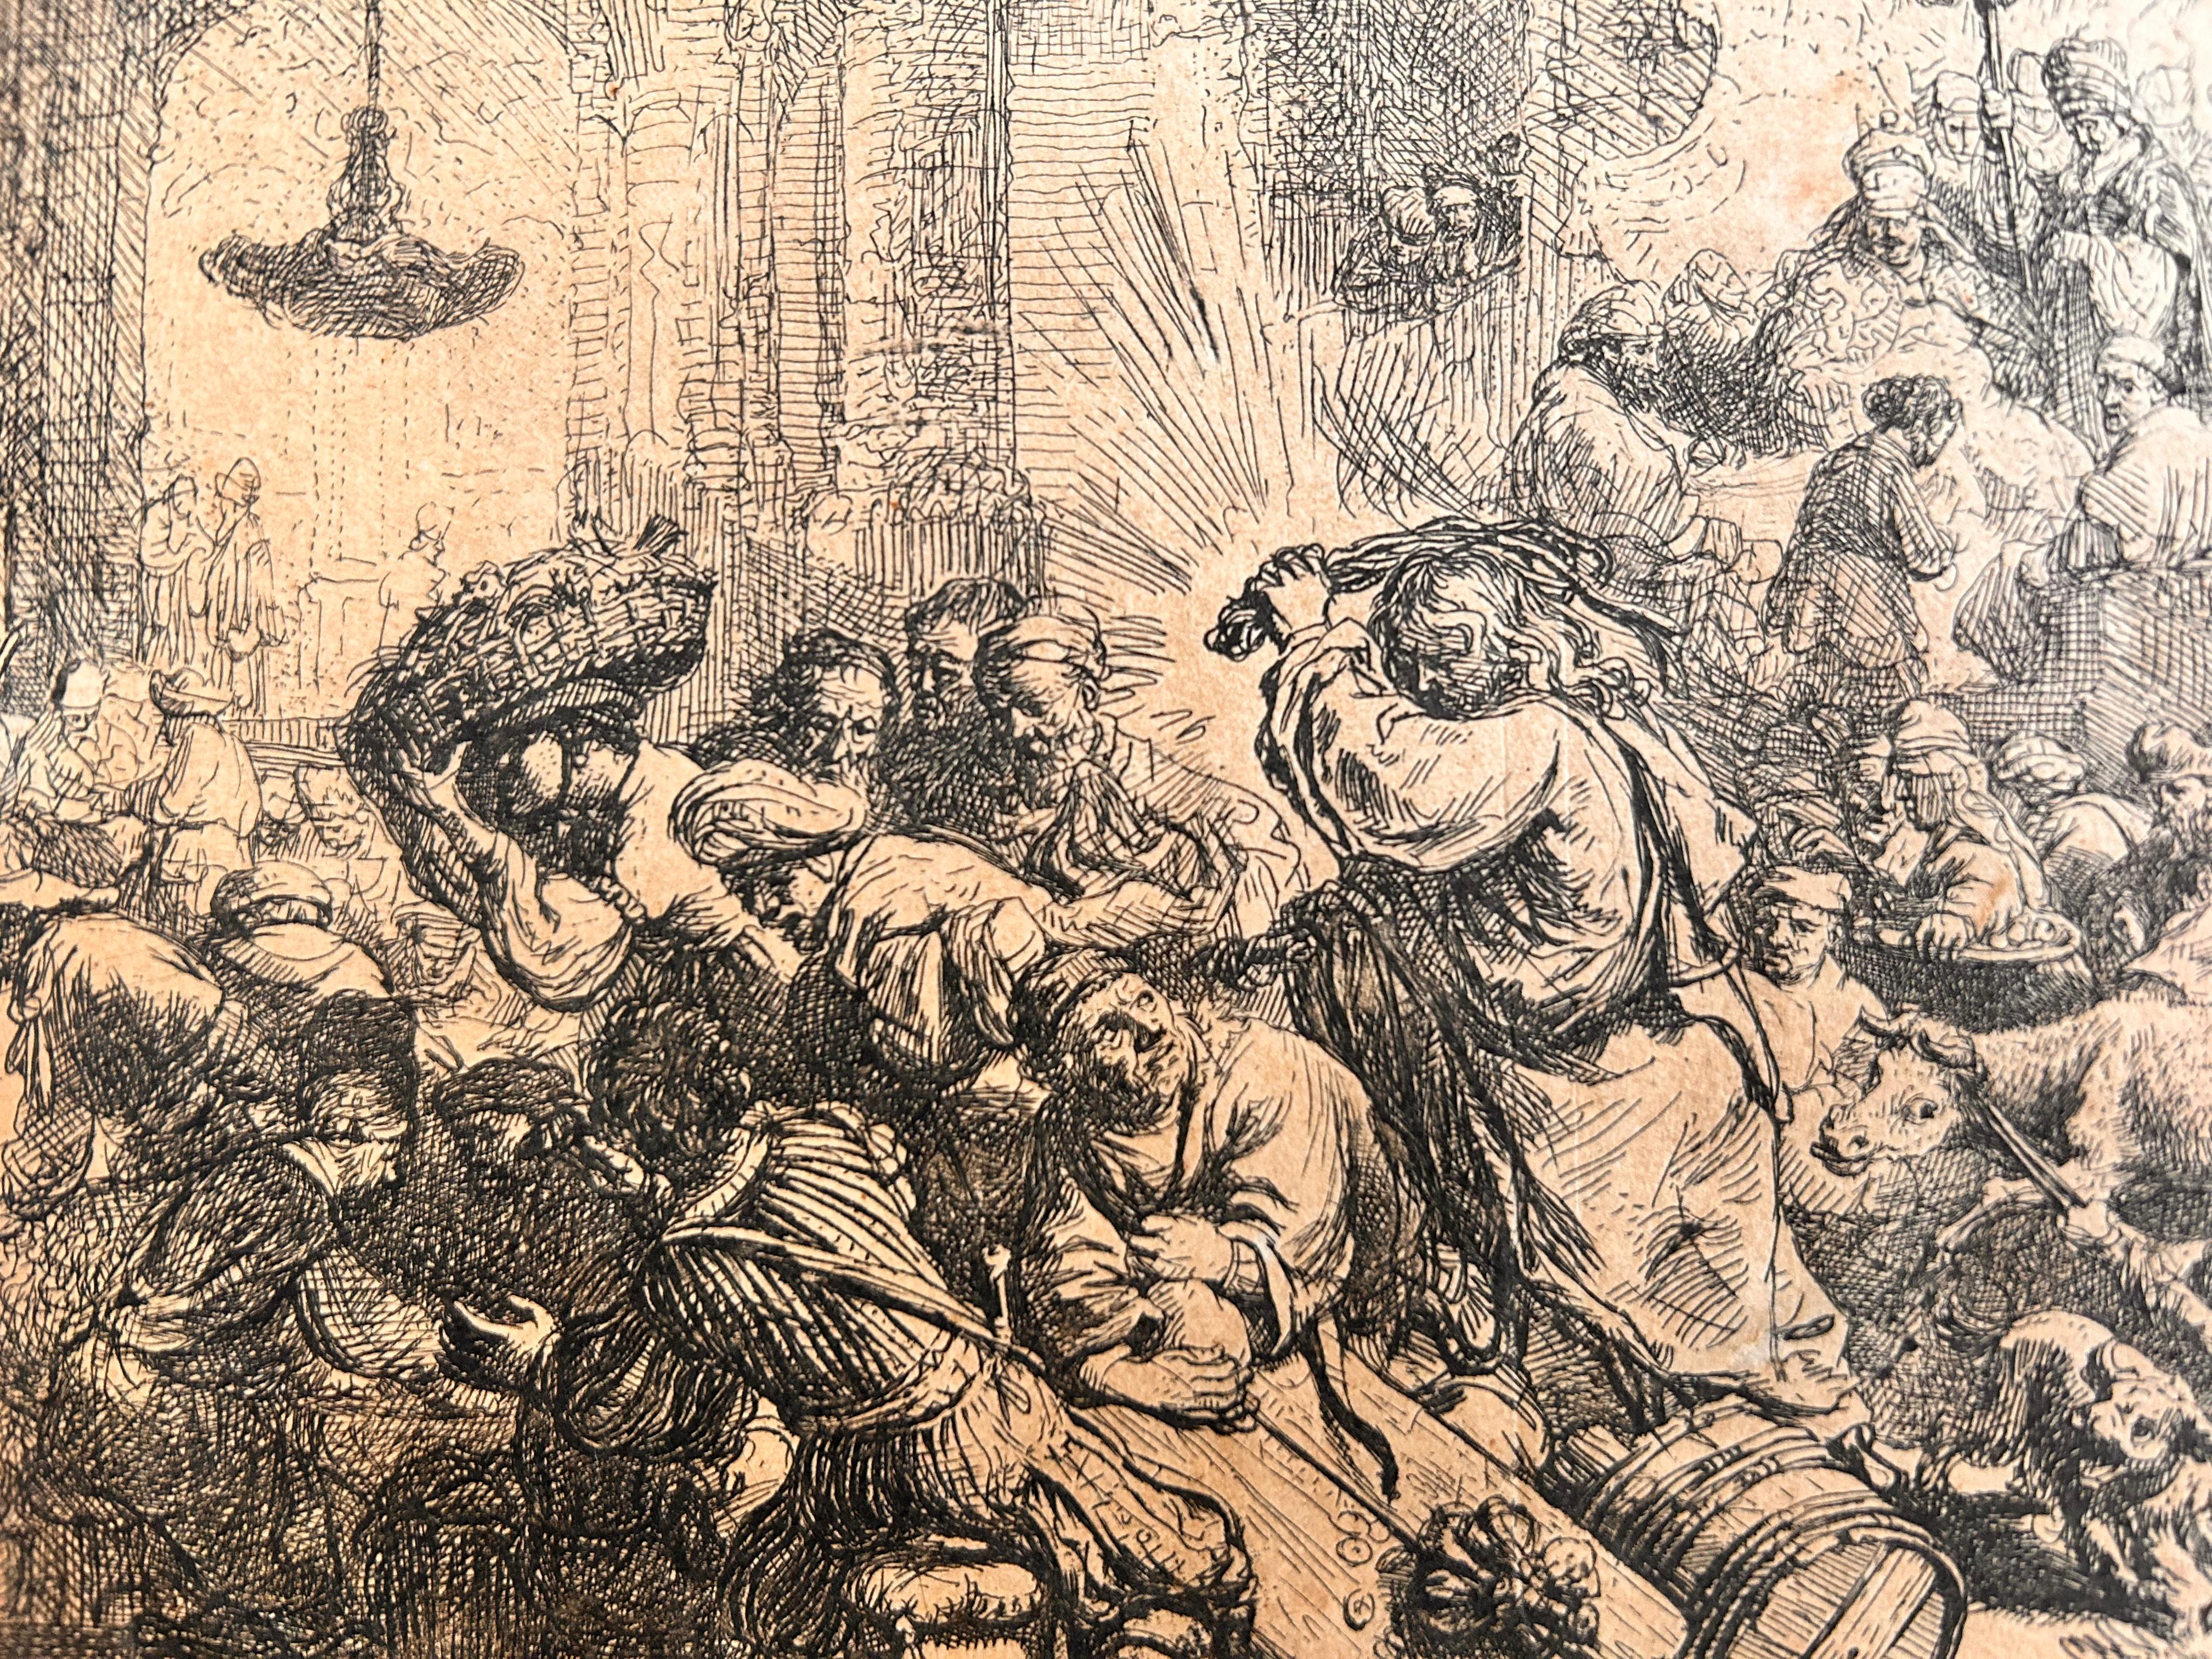 Le Christ chassant les changeurs du Temple par le peintre, graveur et dessinateur néerlandais de l'âge d'or, Rembrandt Harmenszoon van Rijn, généralement connu sous le nom de Rembrandt.
Cette eau-forte avec des touches de pointe sèche, 1635, sur